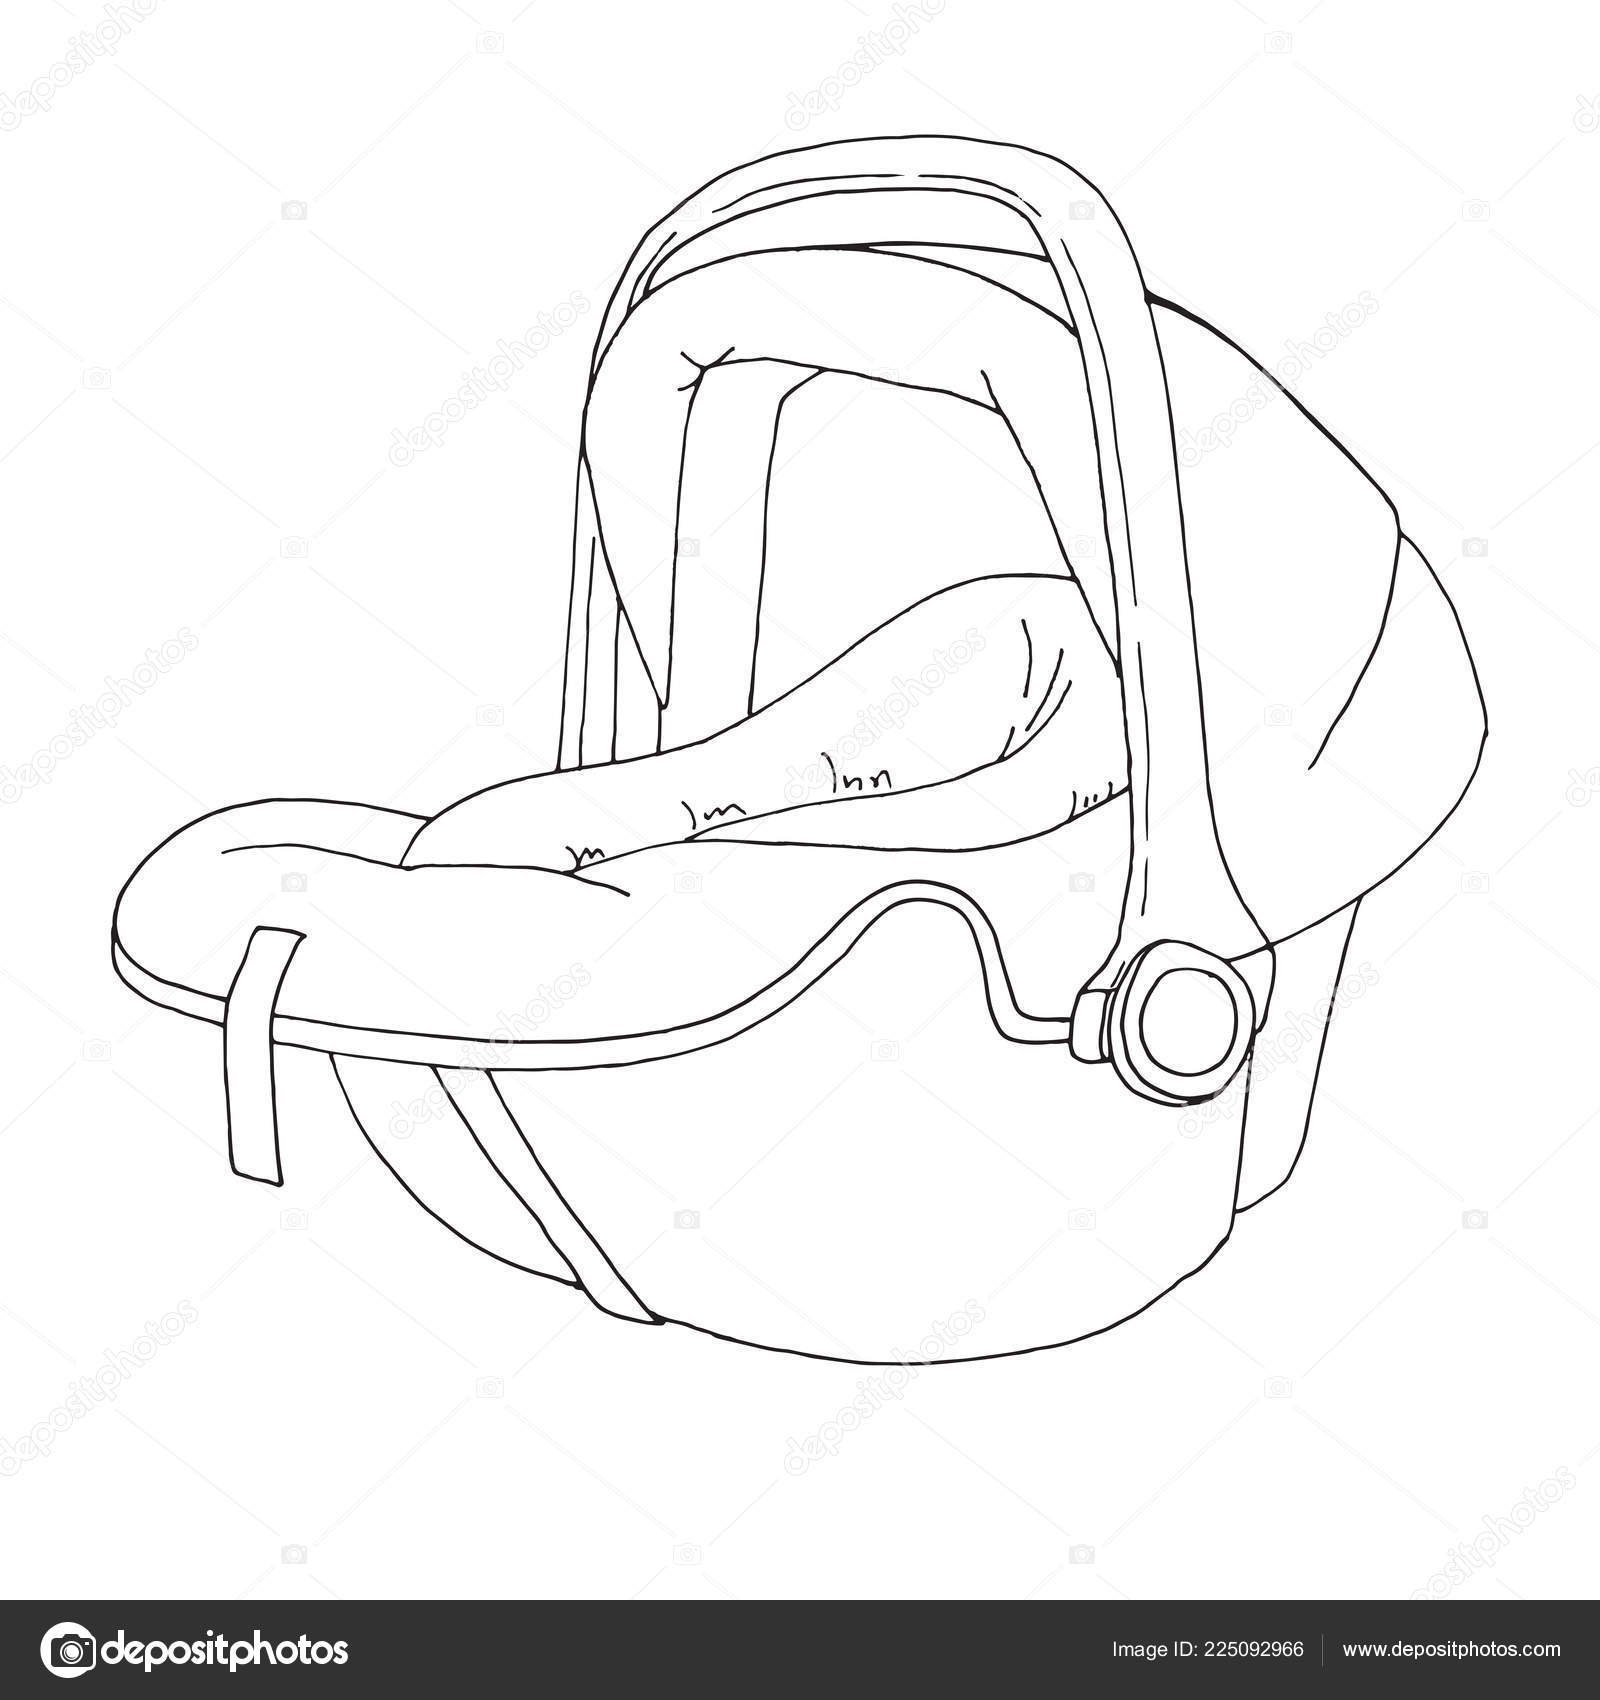 Assento Do Bebê Desenho Do `s Da Criança Ilustração do Vetor